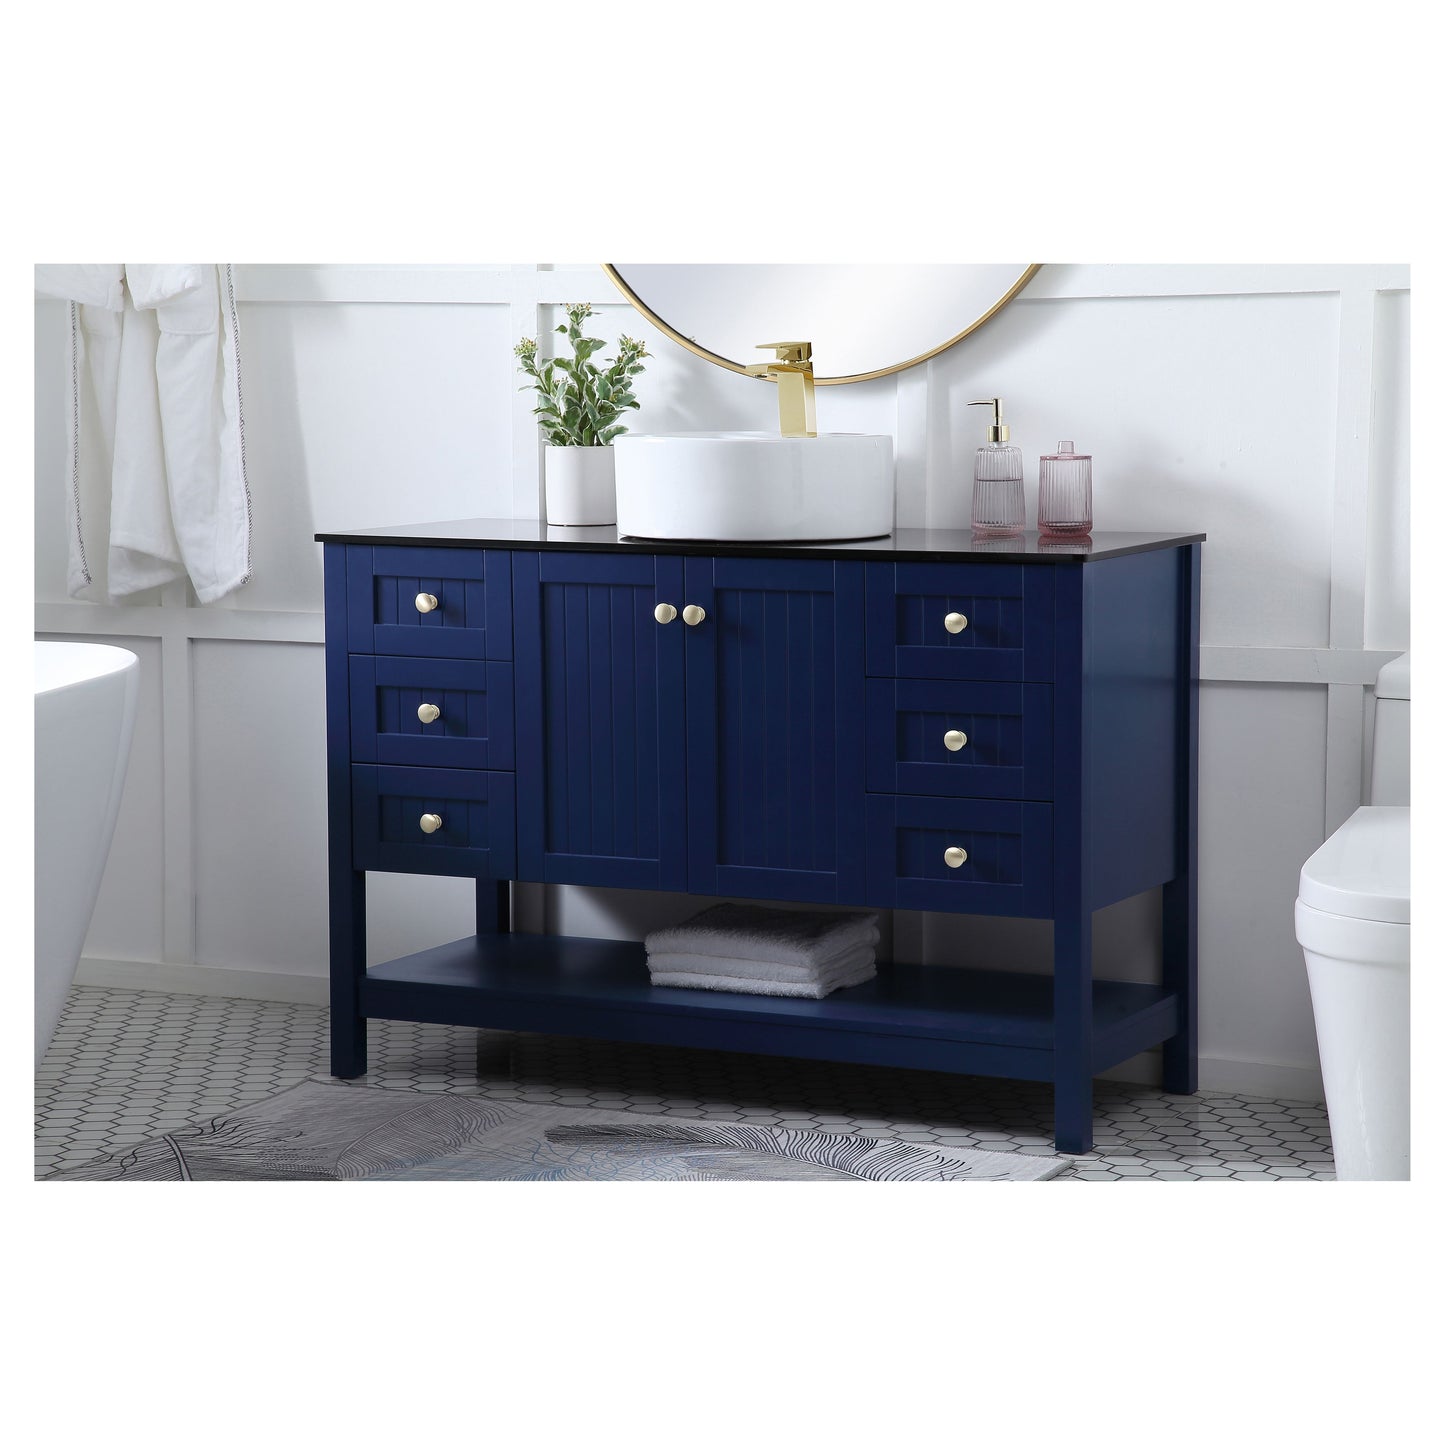 VF16248BL 48" Vessel Sink Bathroom Vanity in Blue